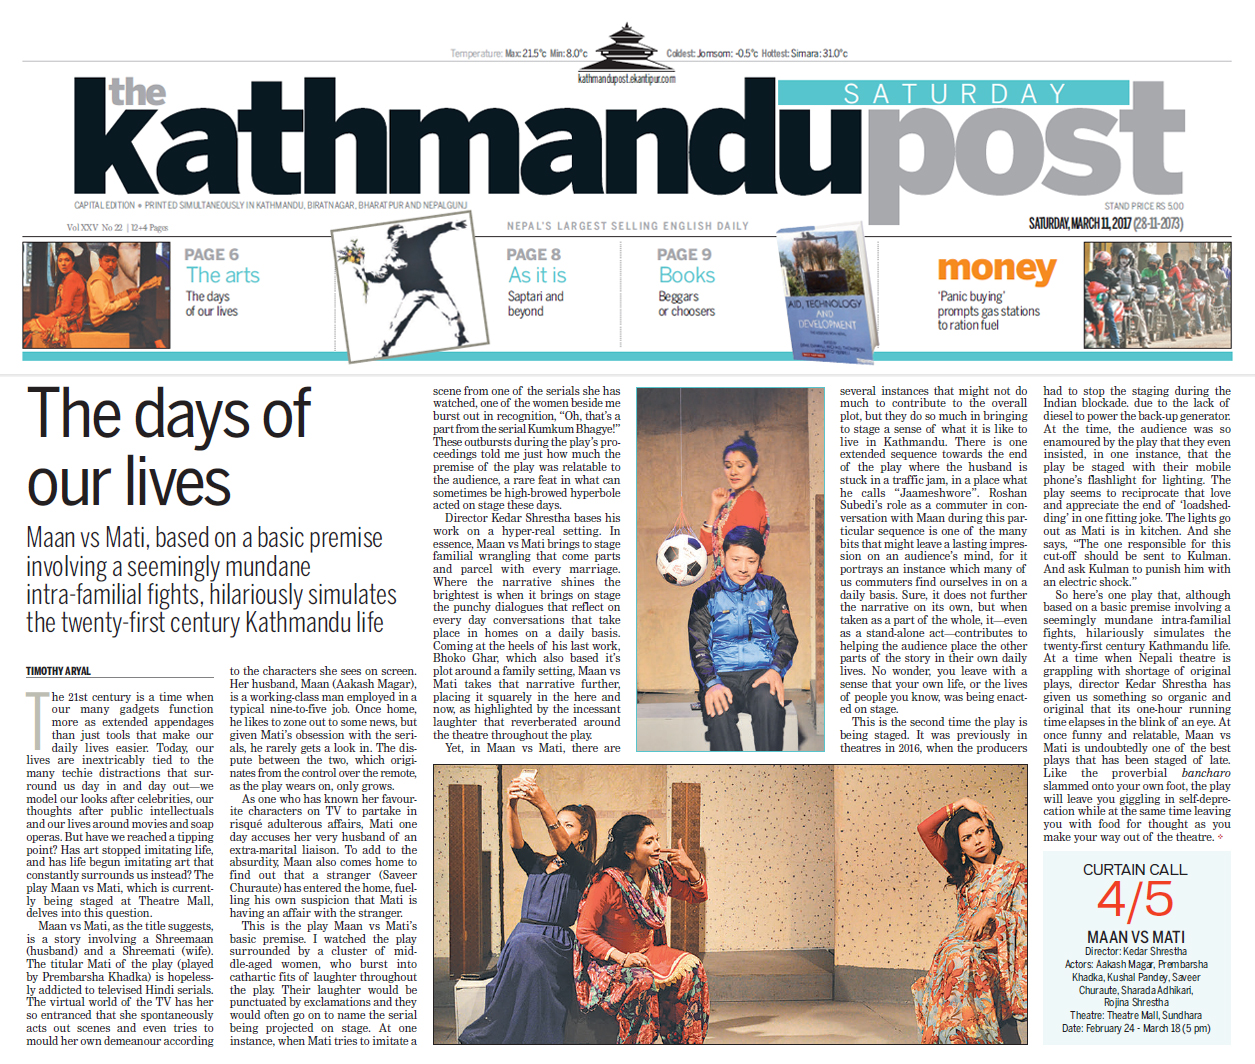 <p>Review of MAAN VS MATI in Kathmandu Post</p>